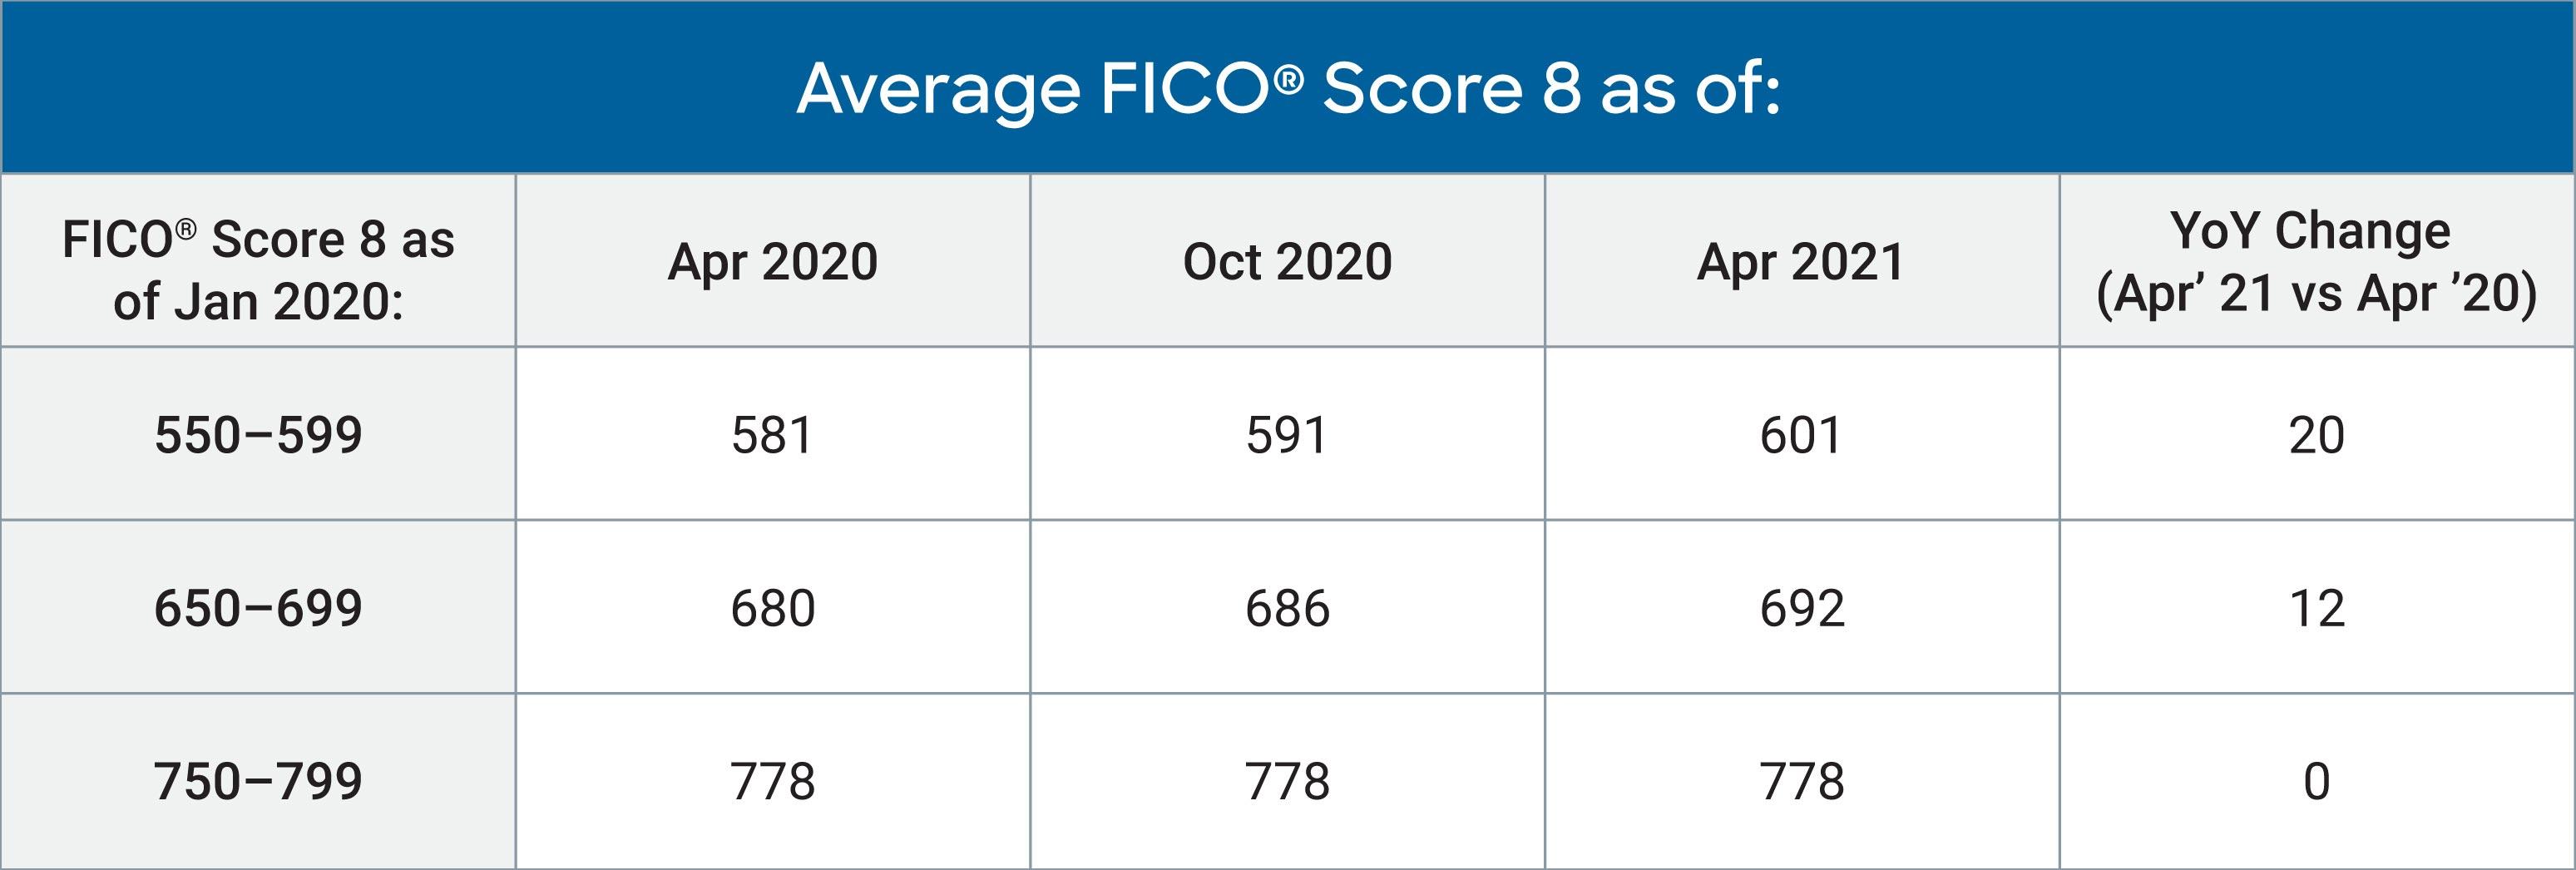 Average U.S. FICO® Score at 716, Indicating Improvement in Consumer